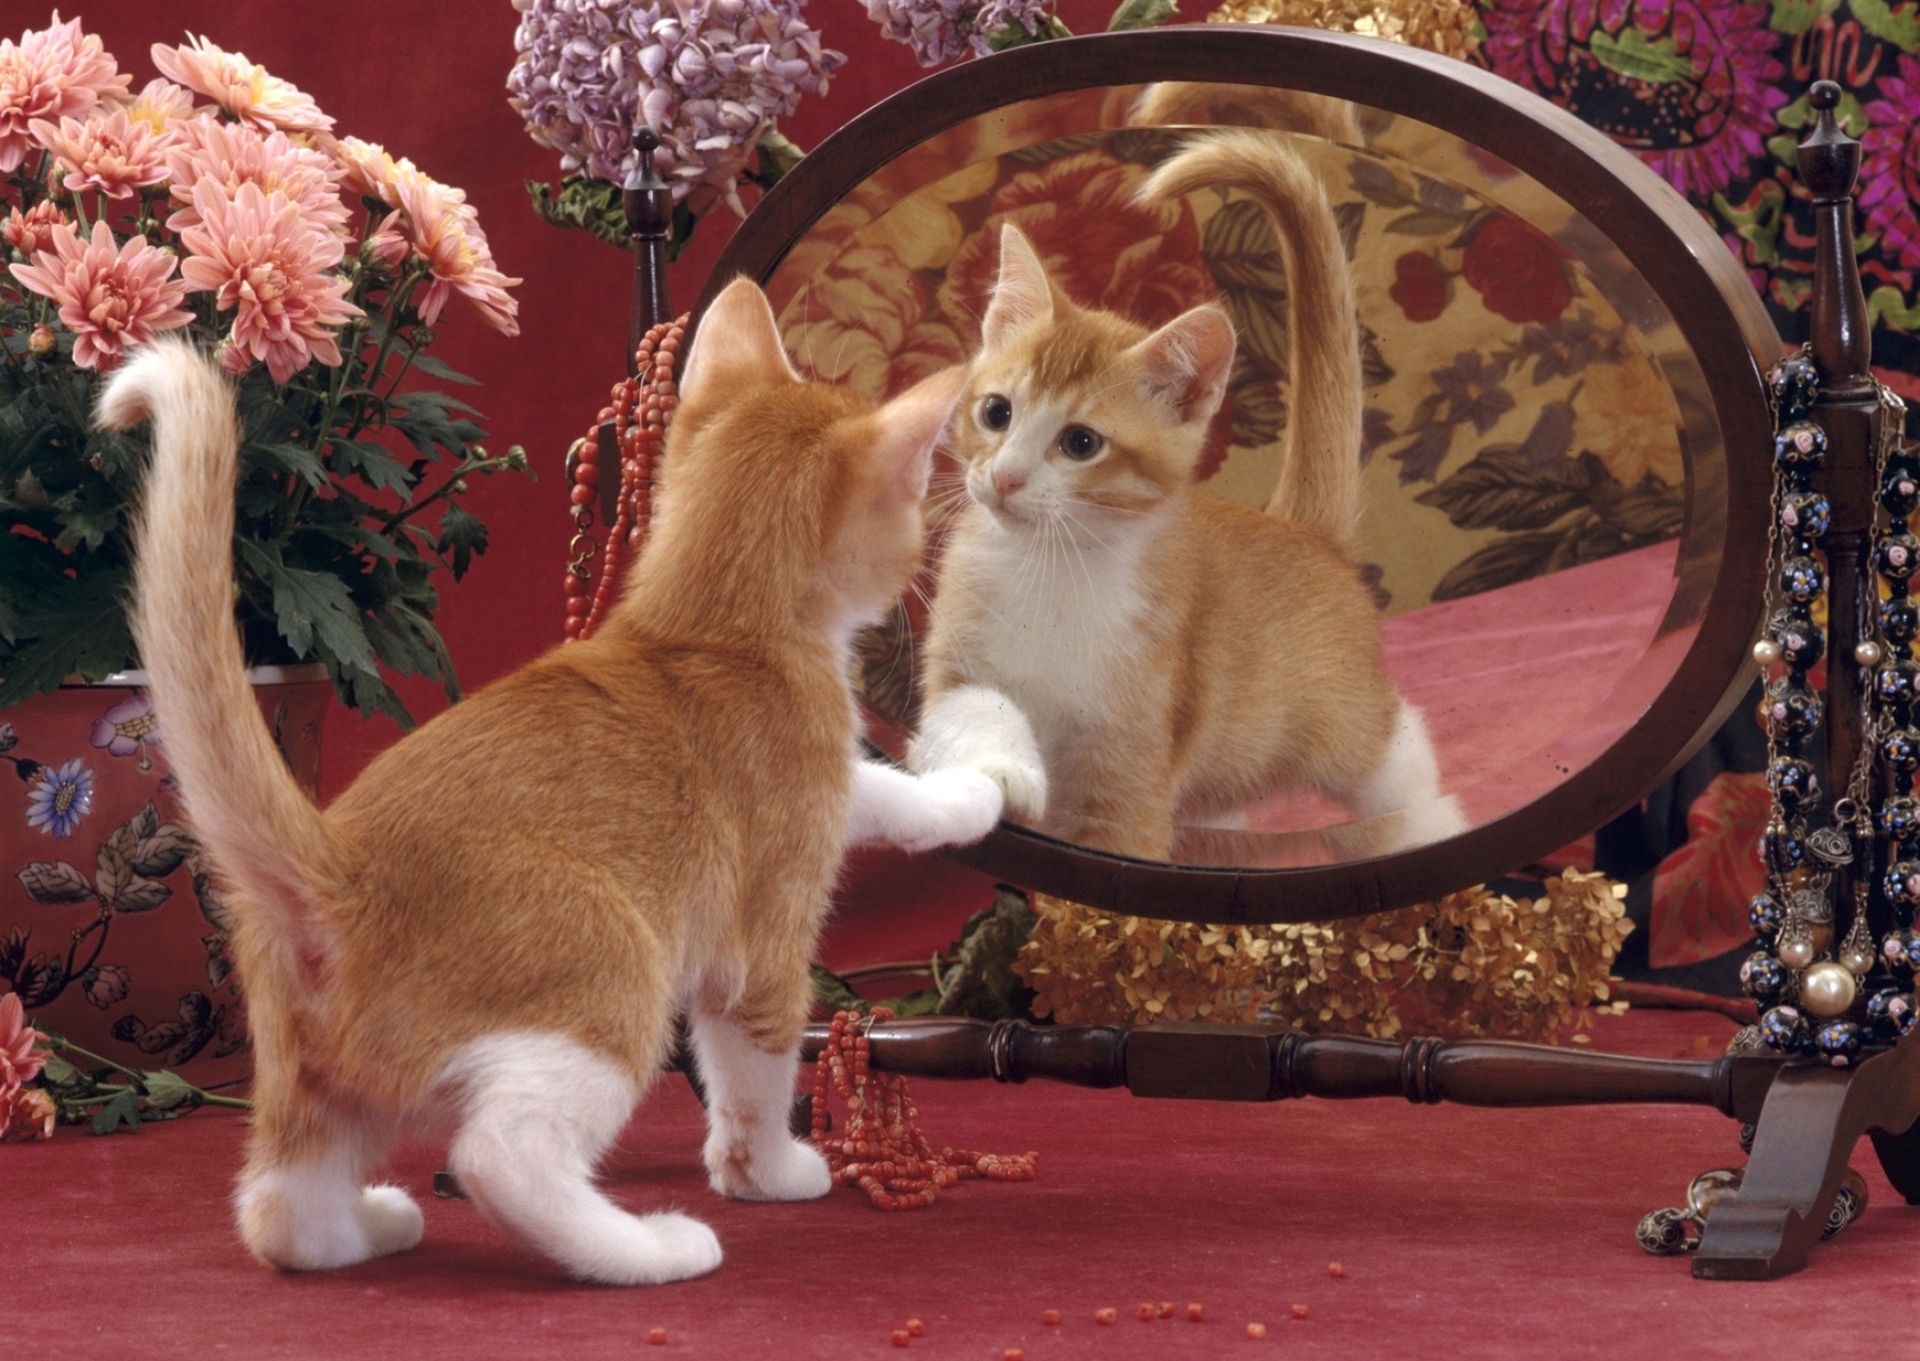 Кошка в зеркале